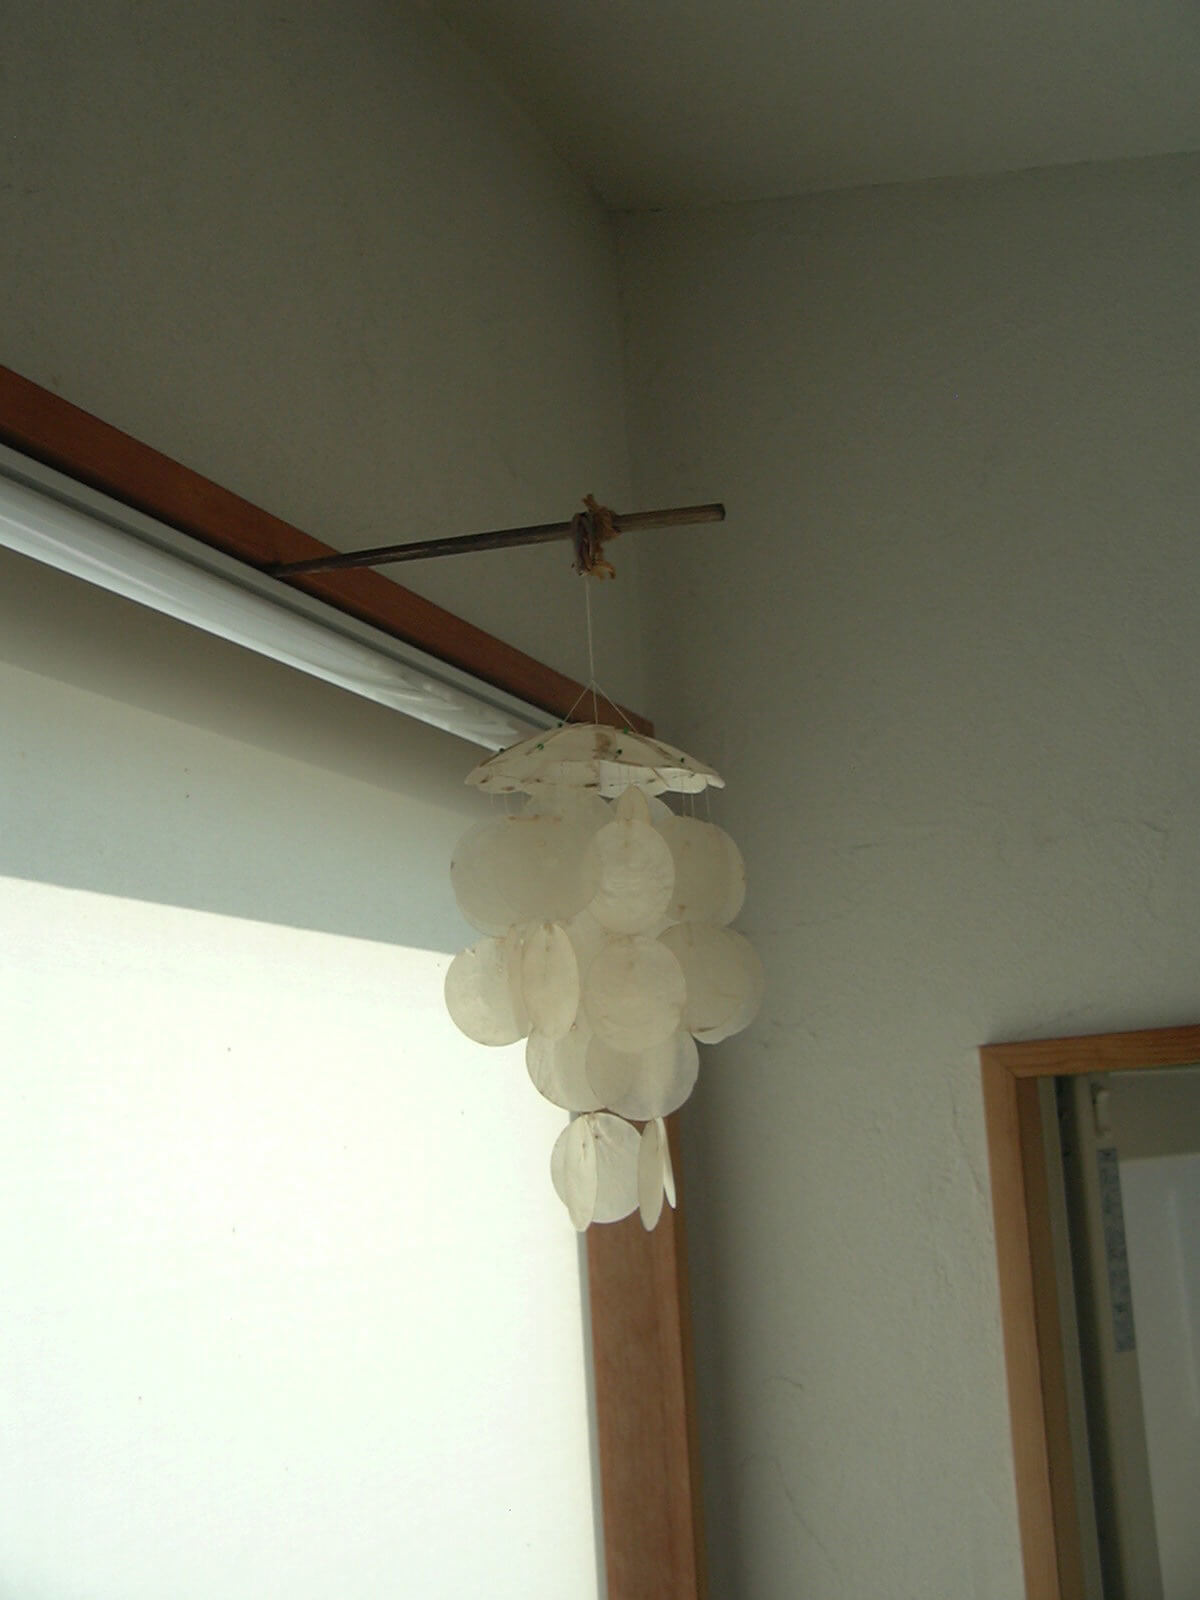 洗面所の風が通る場所に風鈴を吊るしました